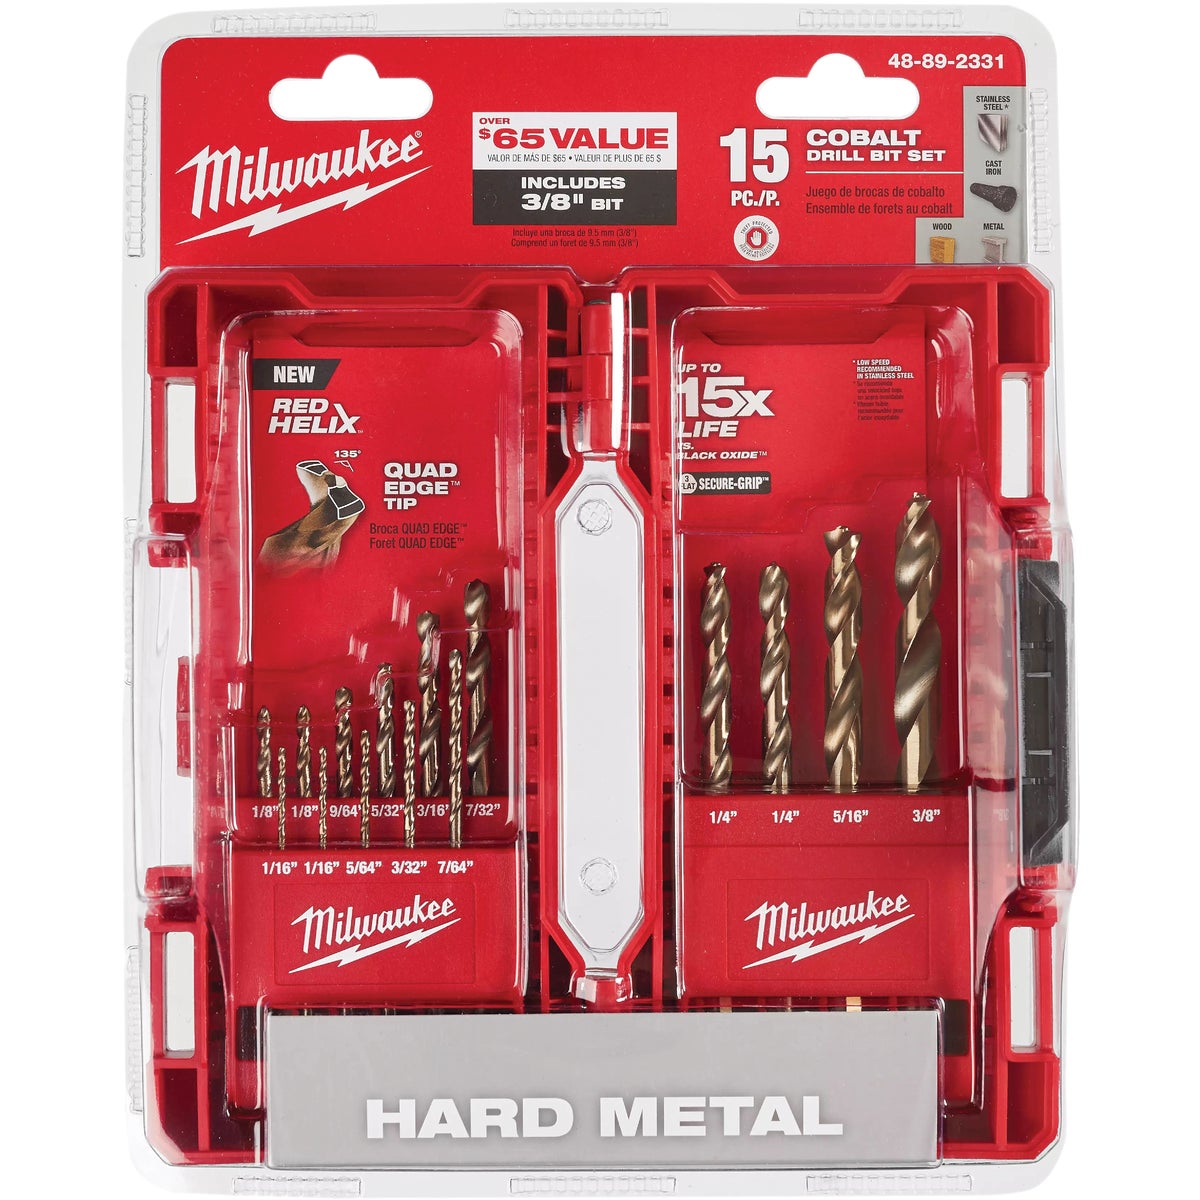 Milwaukee RED HELIX 15-Piece Cobalt Drill Bit Set, 1/16 In. thru 3/8 In.